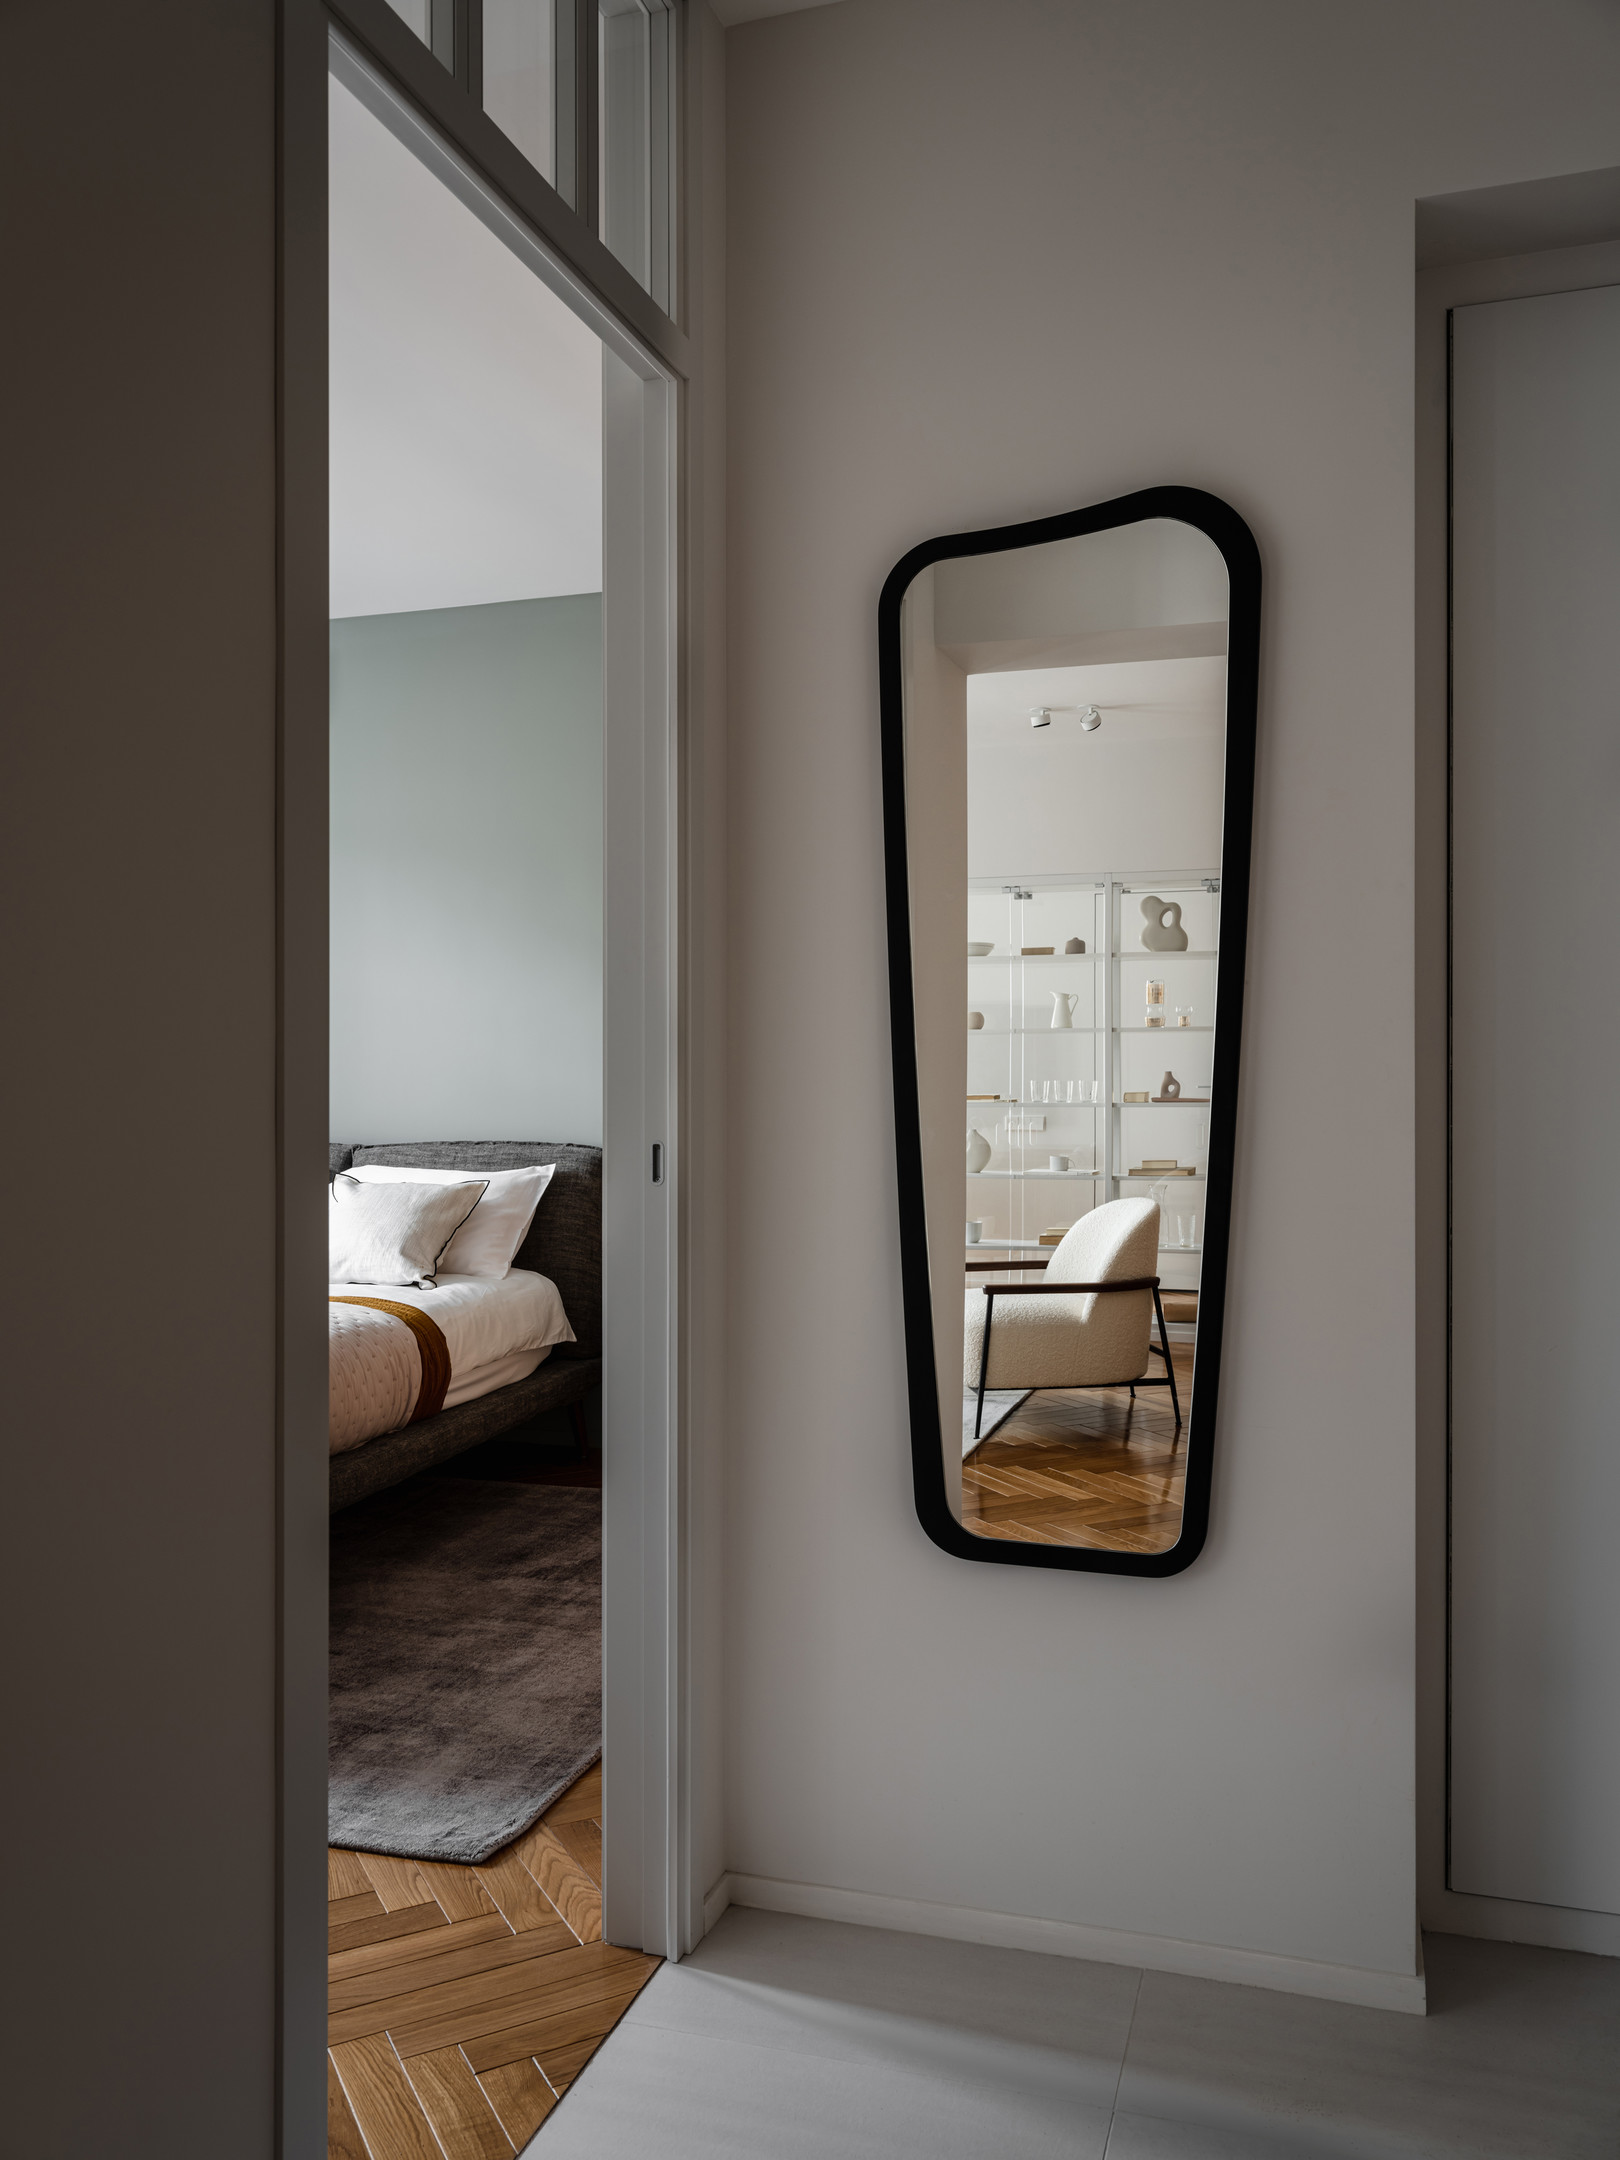 Phía trước cửa ra vào phòng ngủ bố mẹ là tấm gương cỡ lớn với kiểu dáng mới lạ ốp trên tường nhằm phản chiếu hình ảnh phòng khách và chiếc kệ trong suốt tuyệt đẹp.